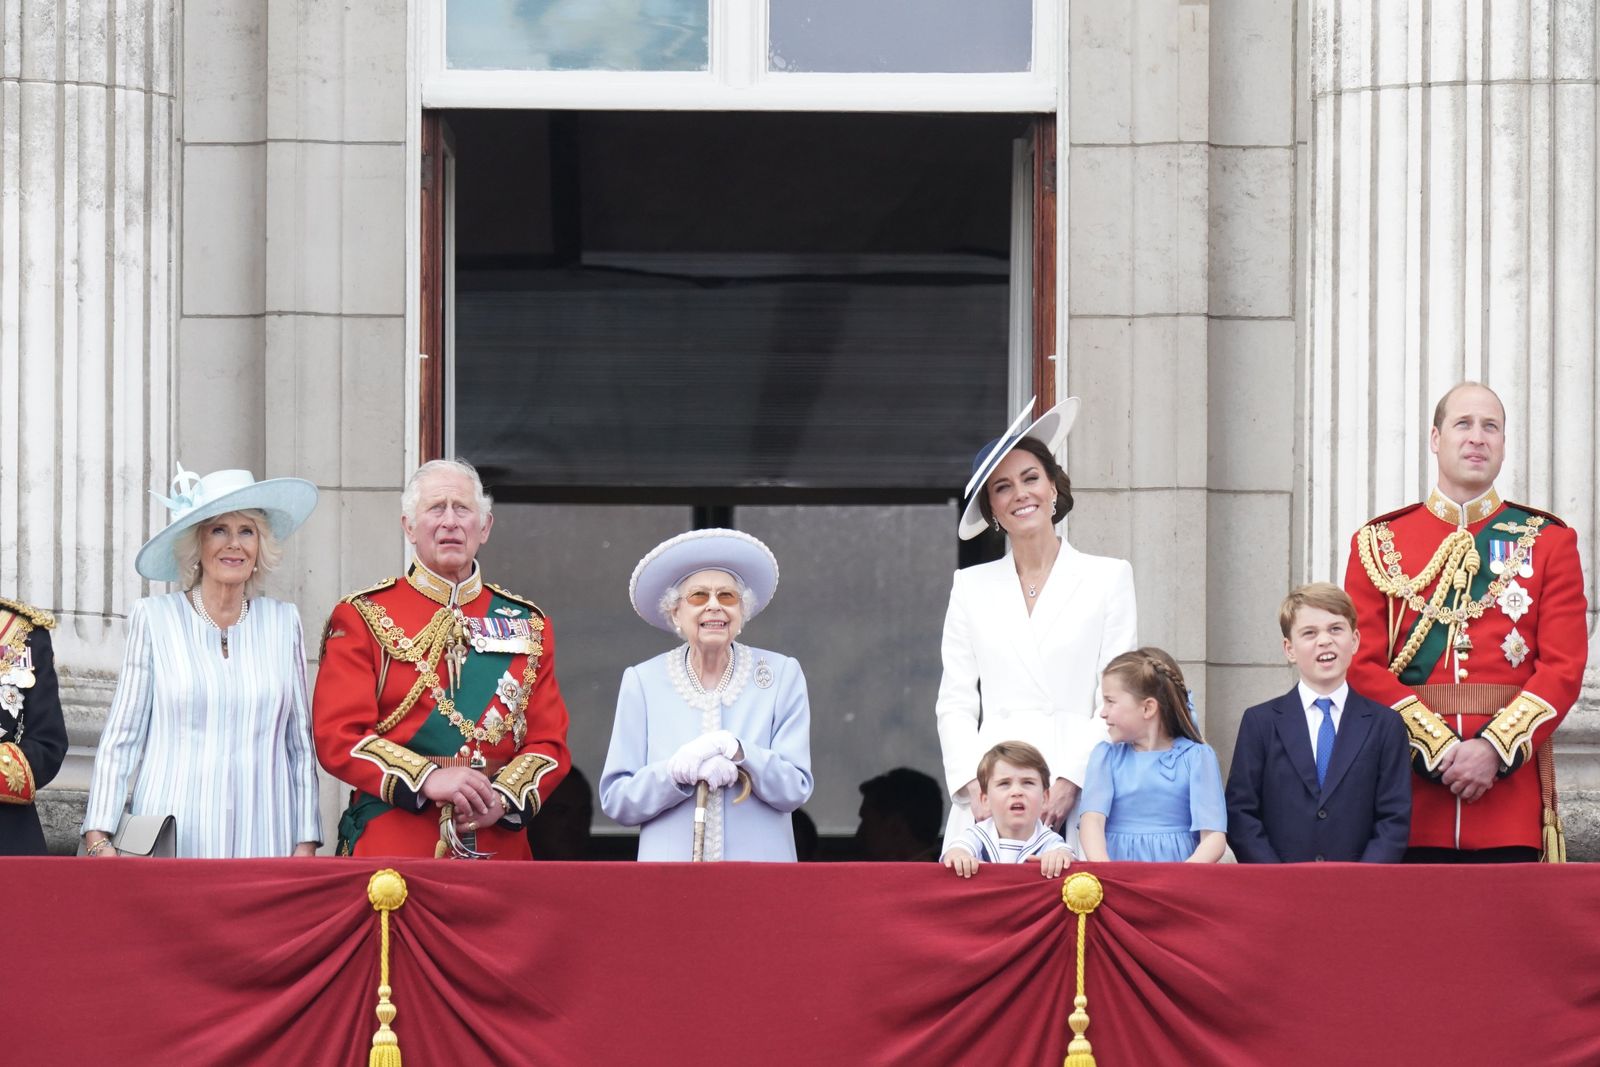 ملكة بريطانيا إليزابيث الثانية وولي العهد الأمير تشارلز وعدد من أفراد العائلة الملكية من شرفة قصر باكنجهام في لندن- 2 يونيو 2022 - Twitter/@RoyalFamily